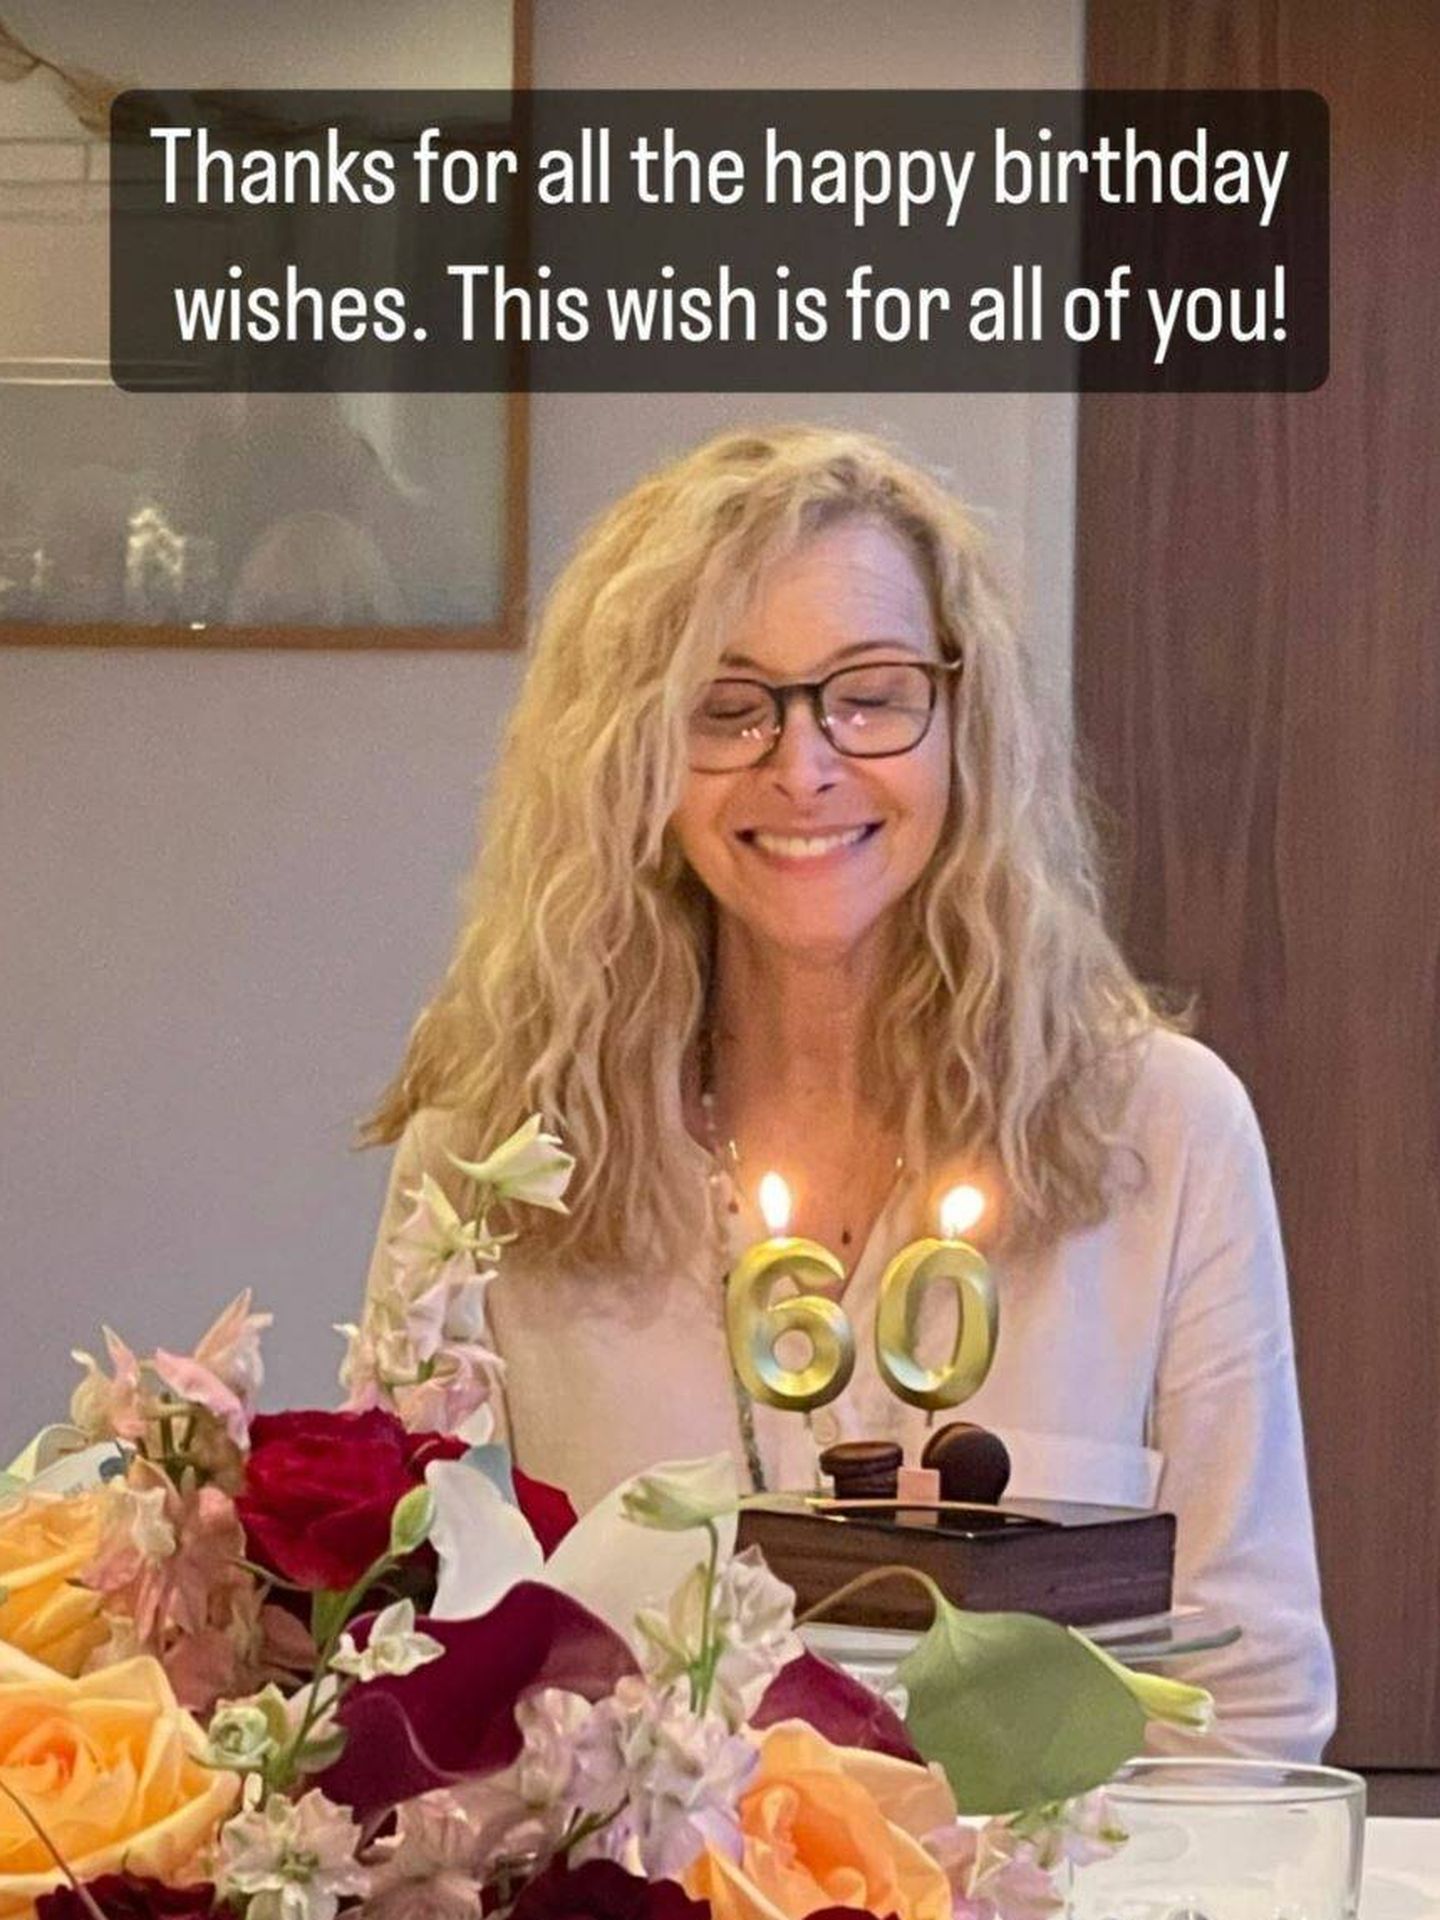 El deseo de cumpleaños de Kudrow. (Instagram/@lisakudrow)